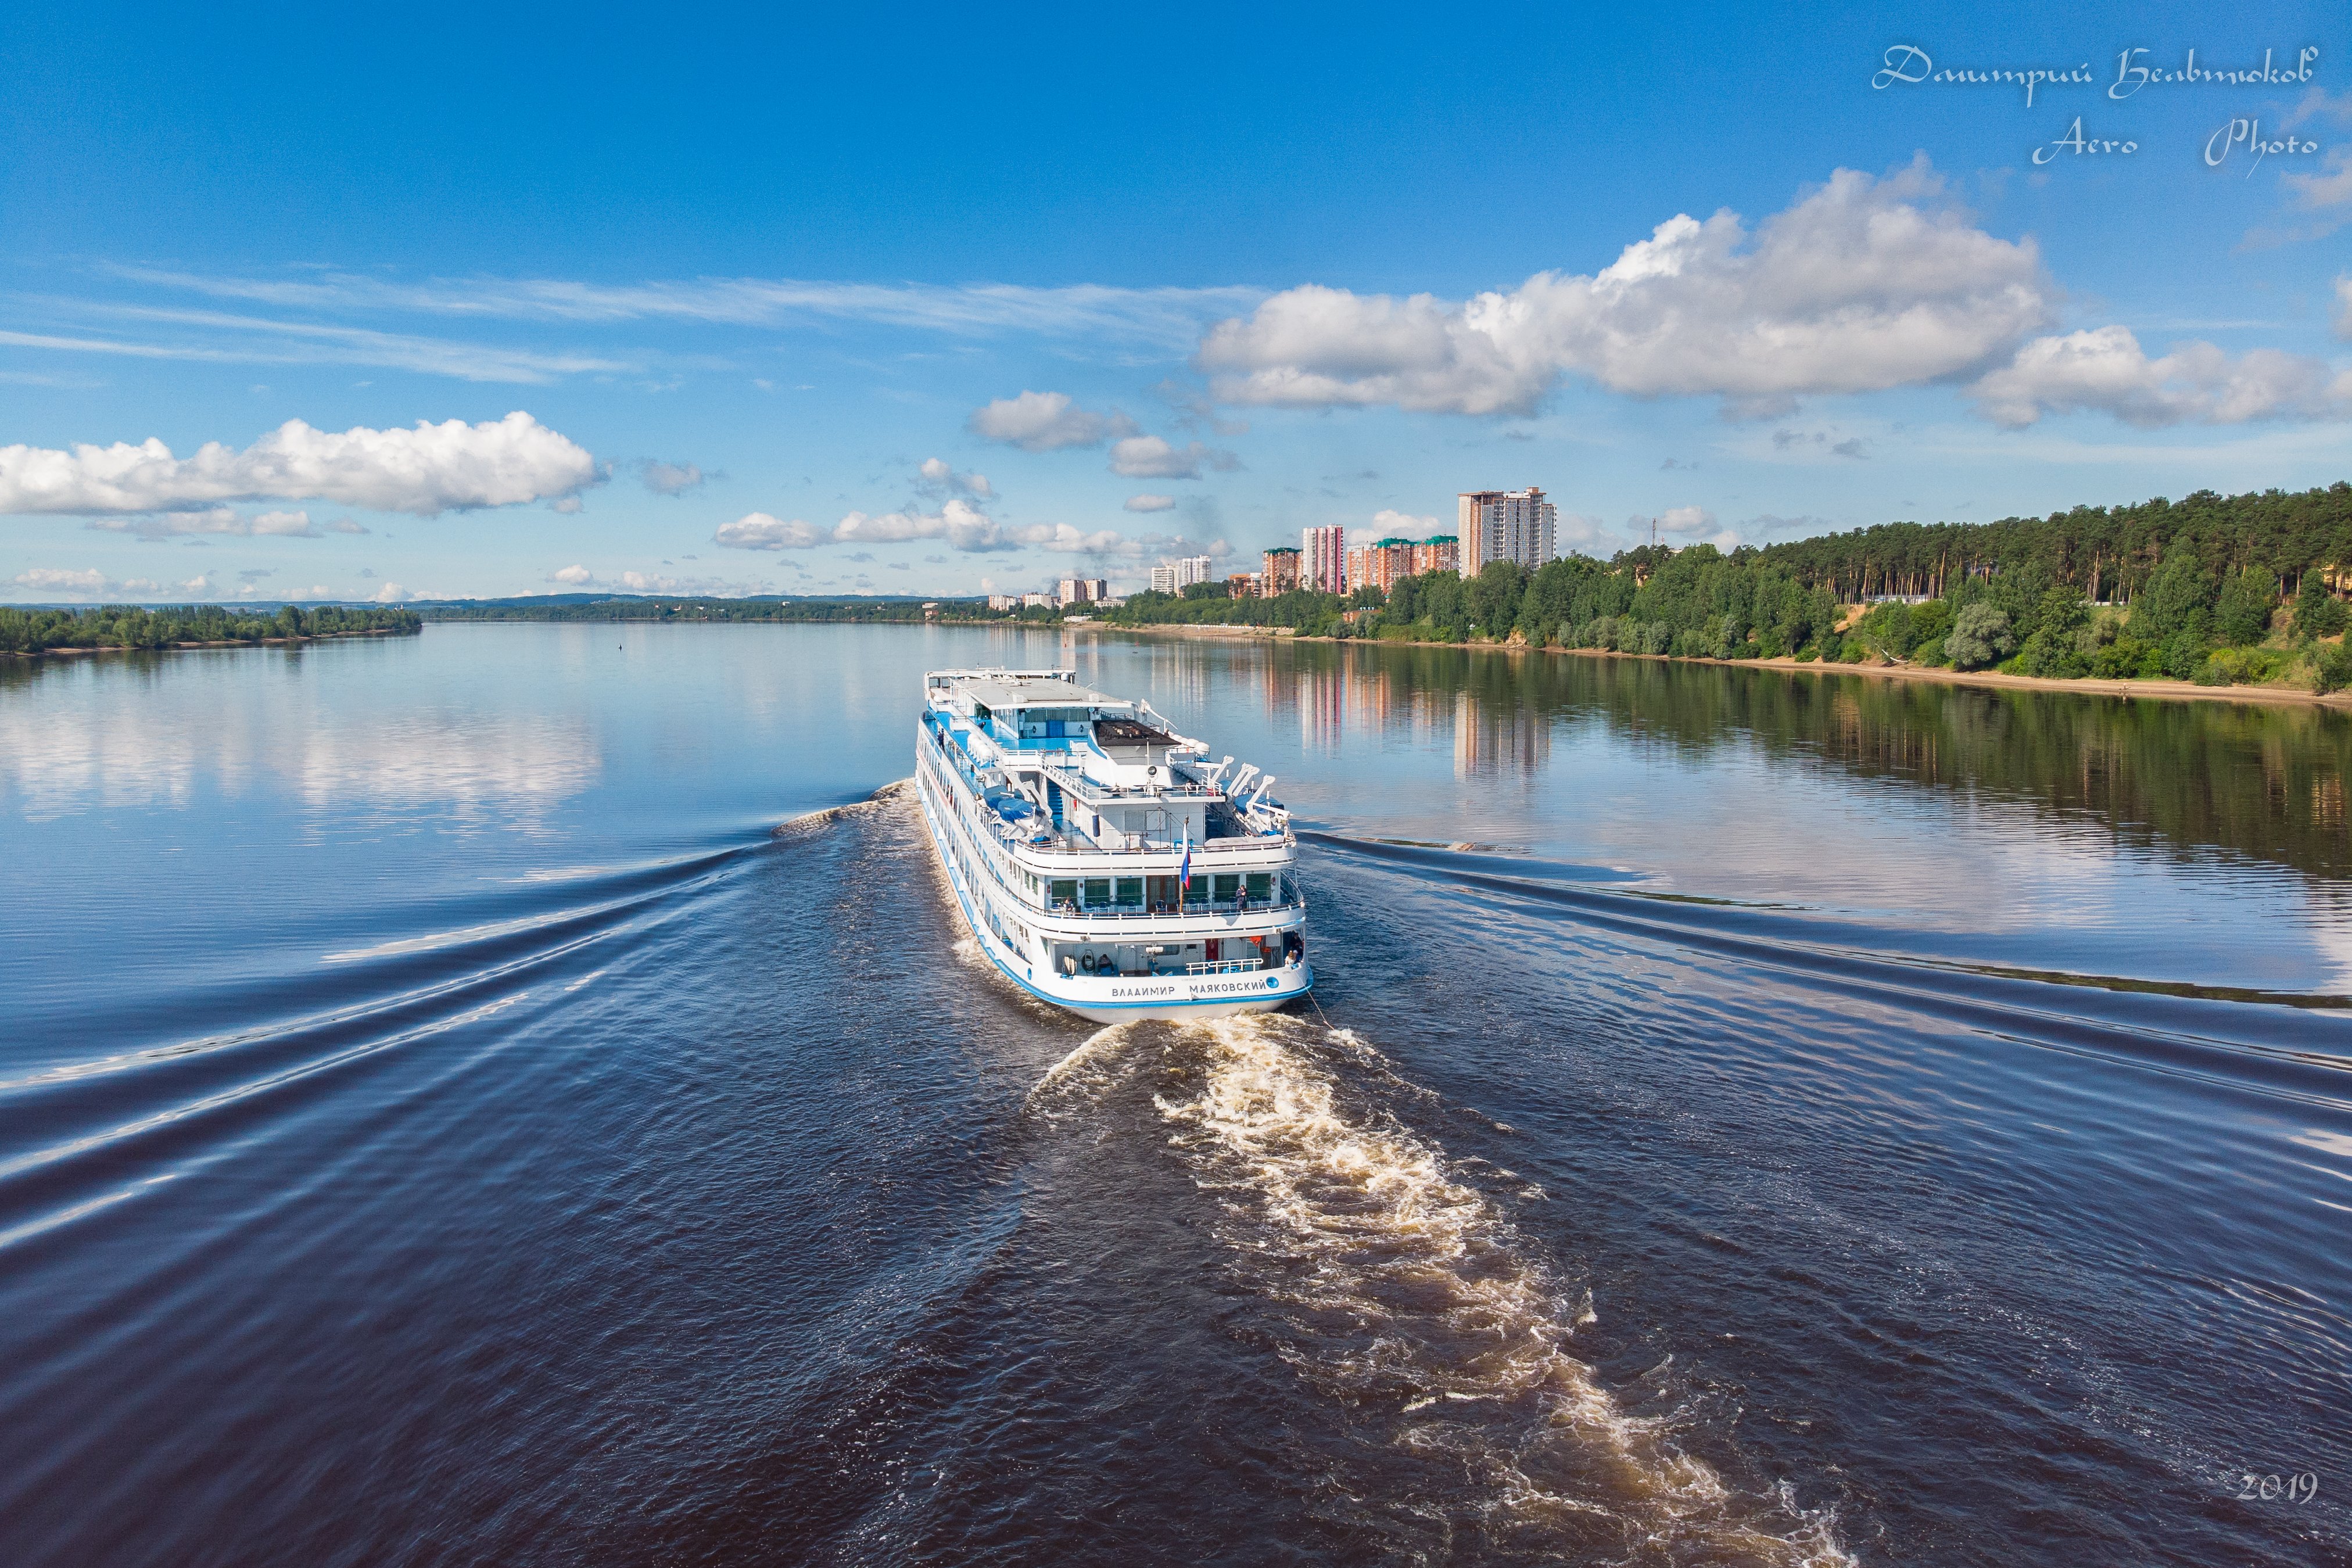 Великие Реки Волга 10 Купить